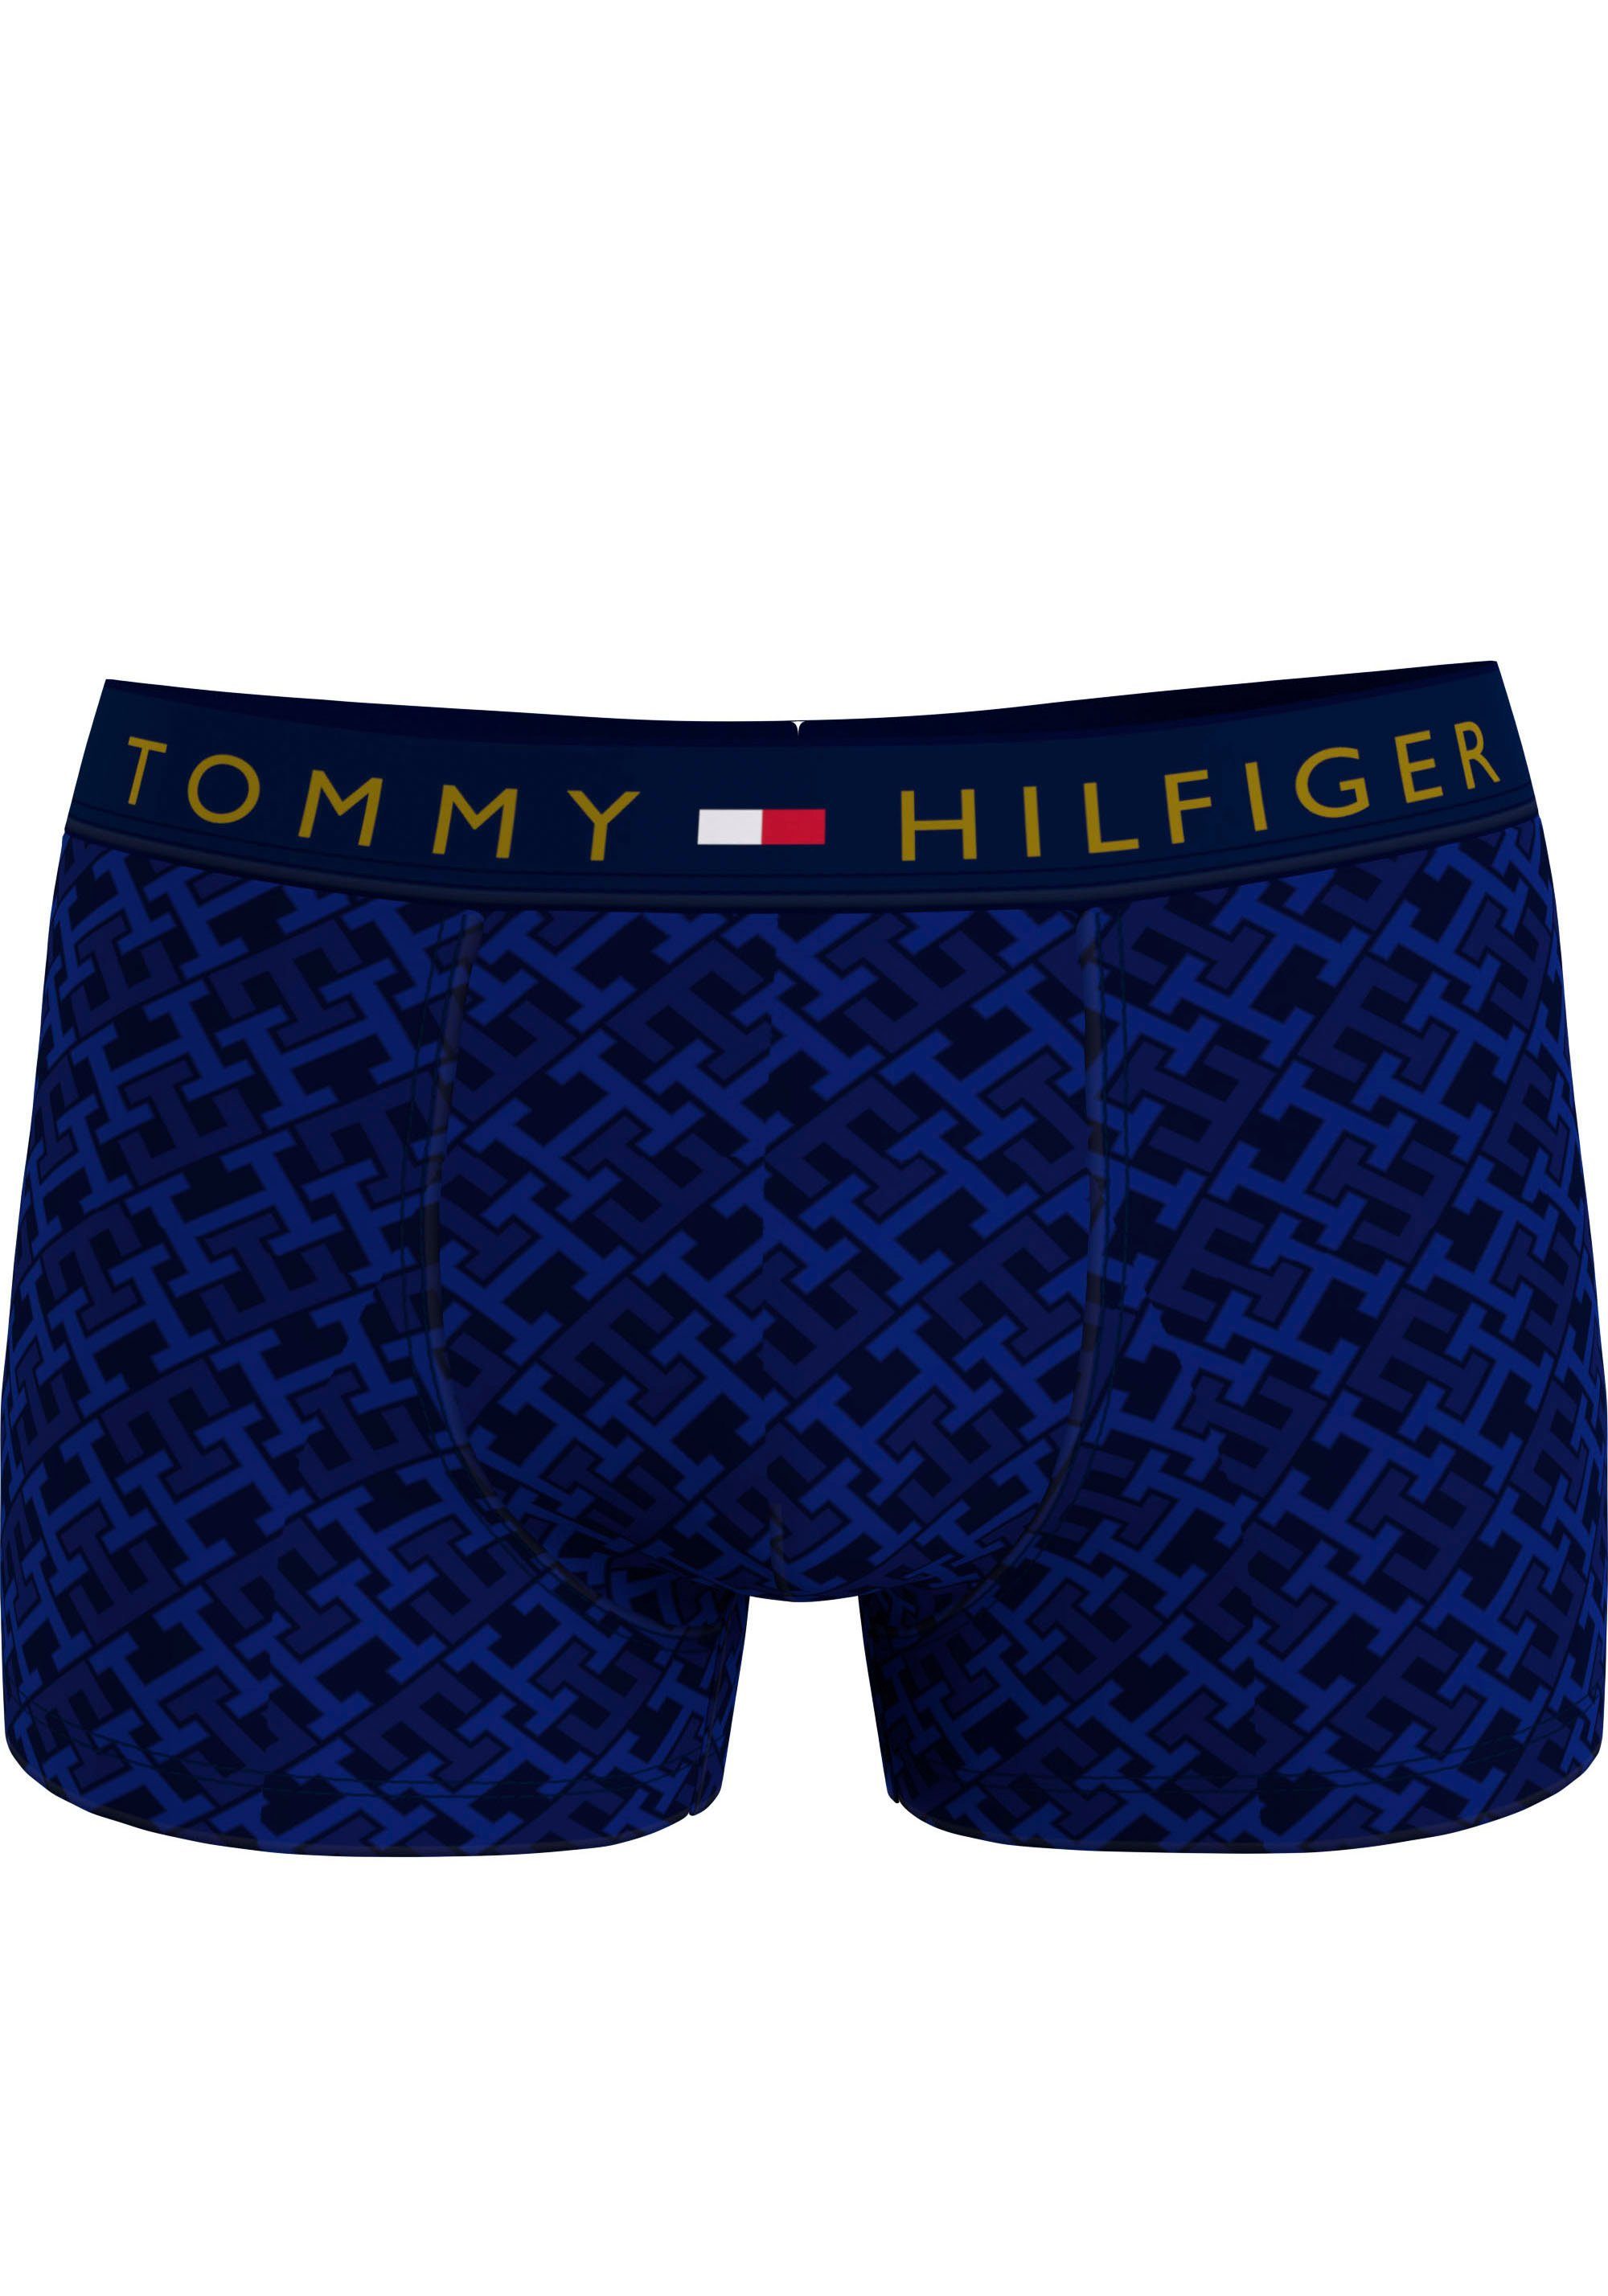 Tommy Hilfiger Underwear Trunk